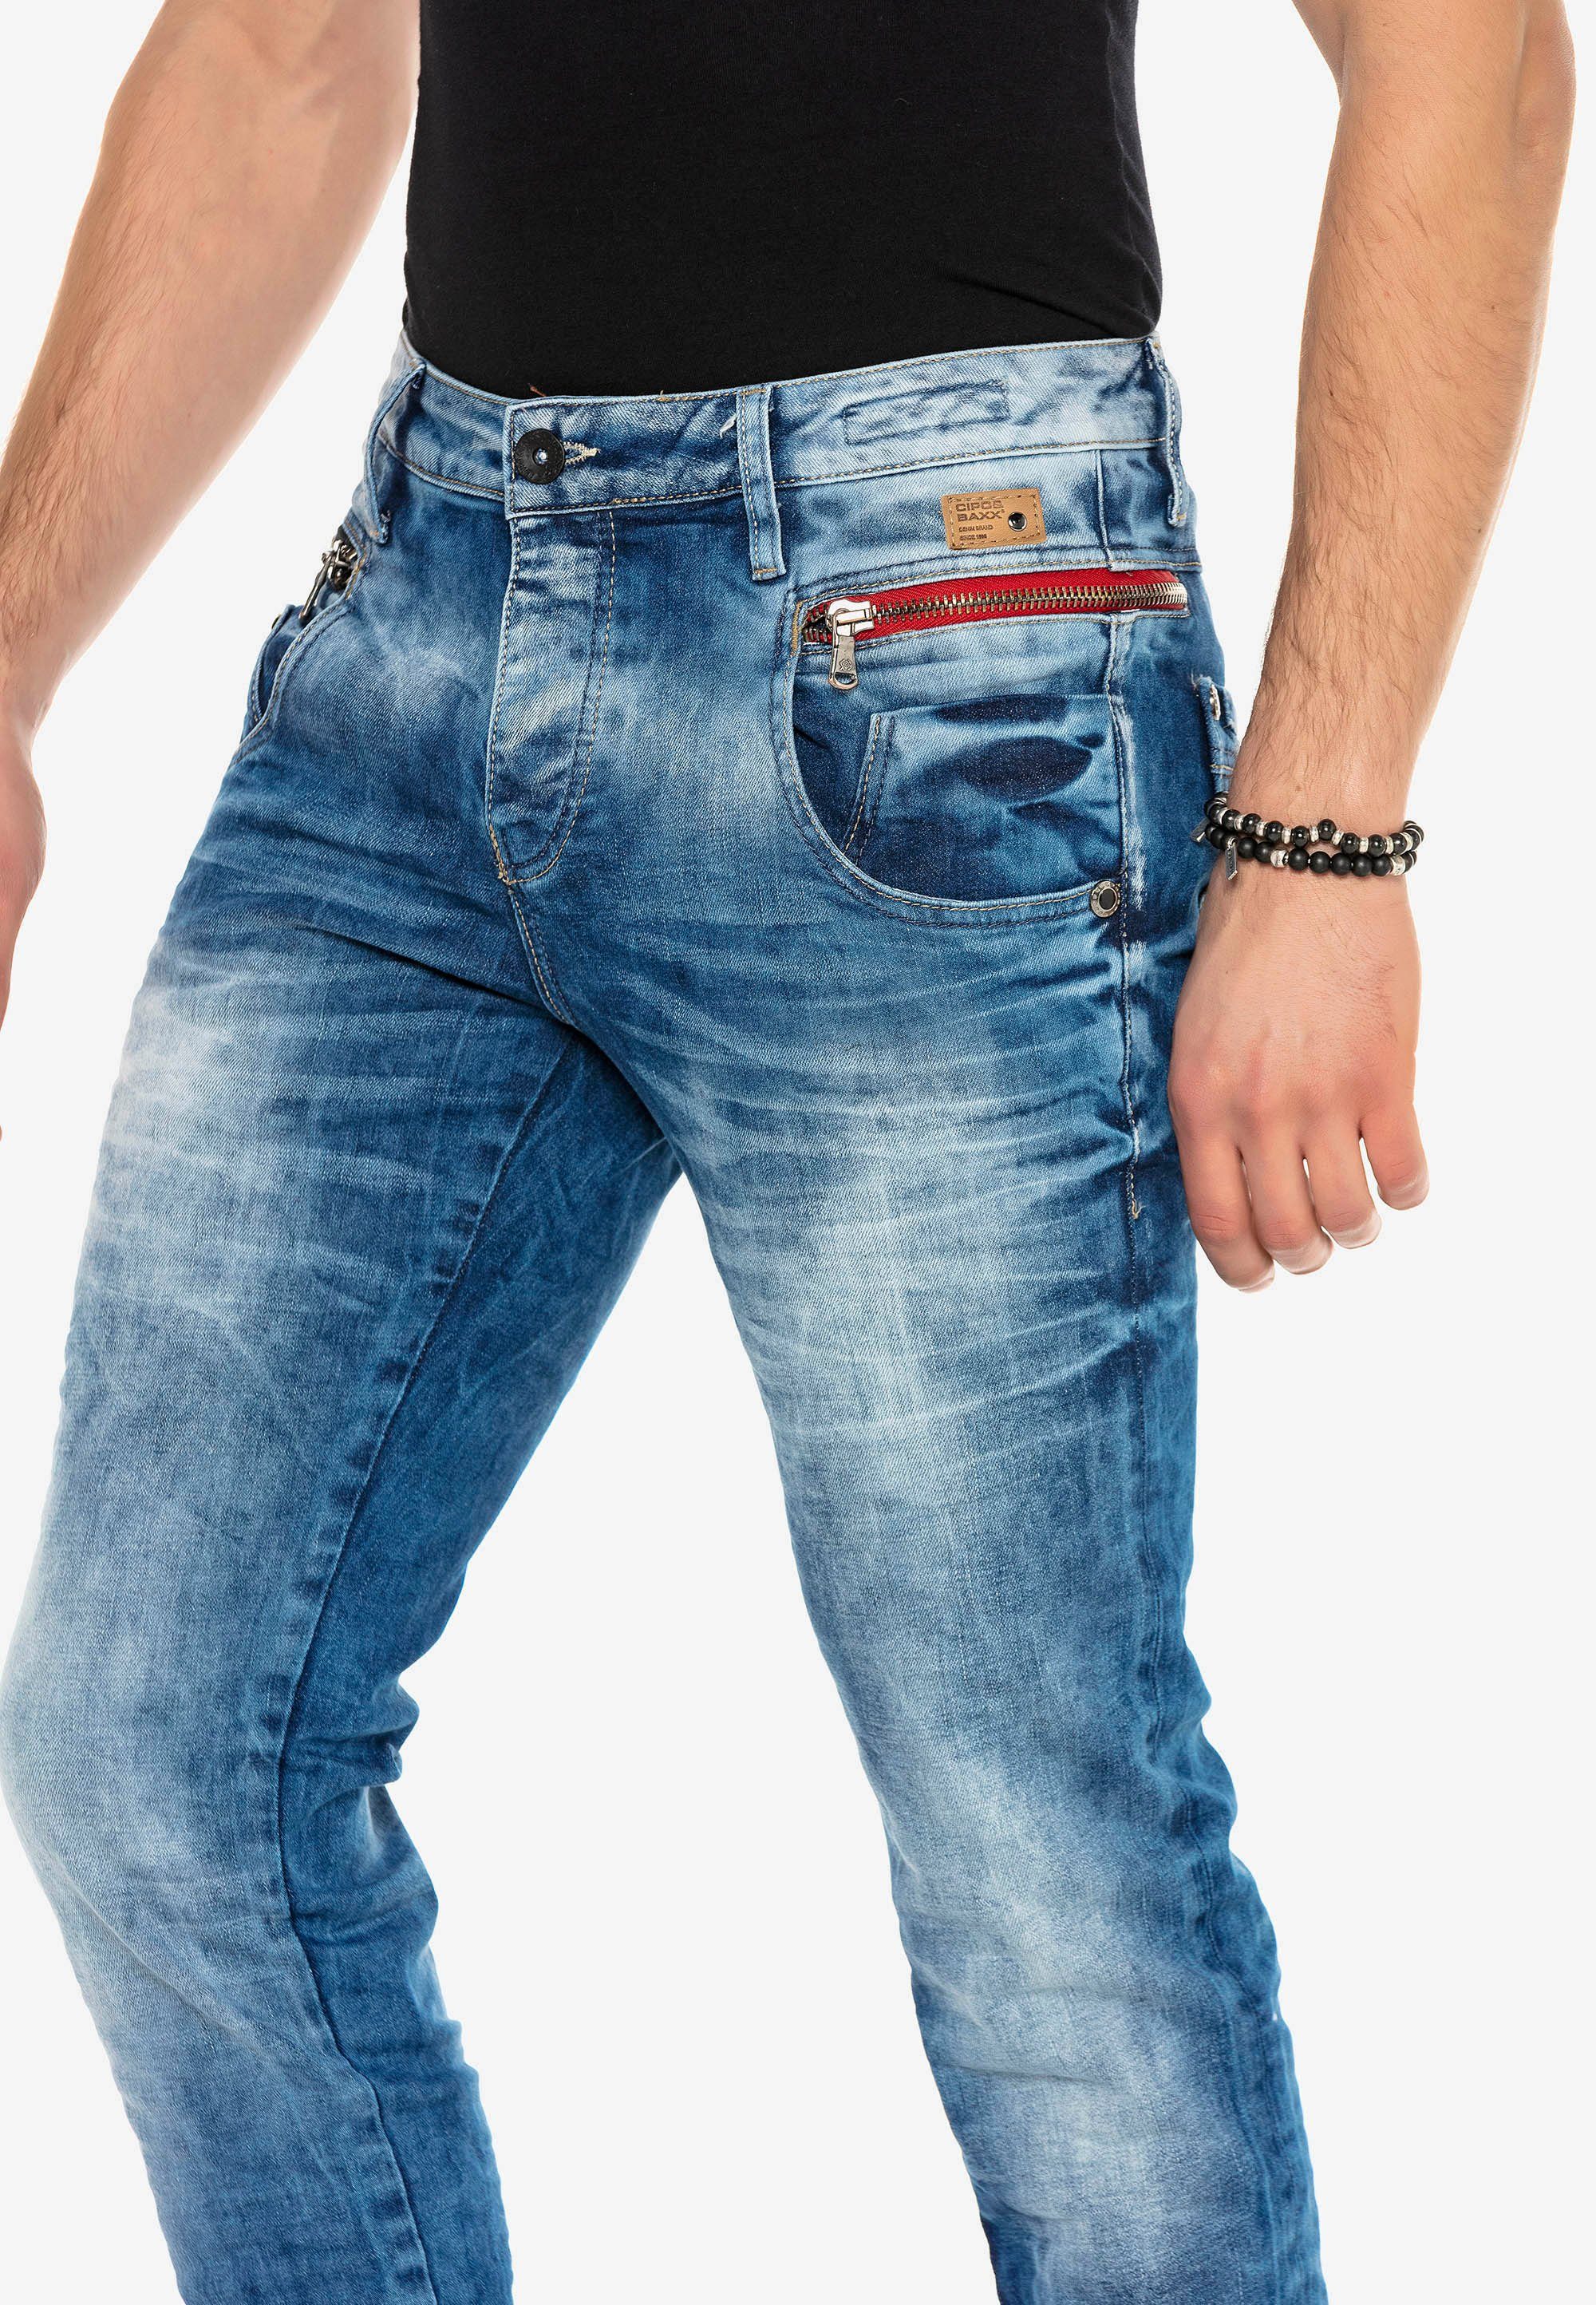 in Slim-fit-Jeans Design in Fit Straight & Cipo Baxx verwaschenem